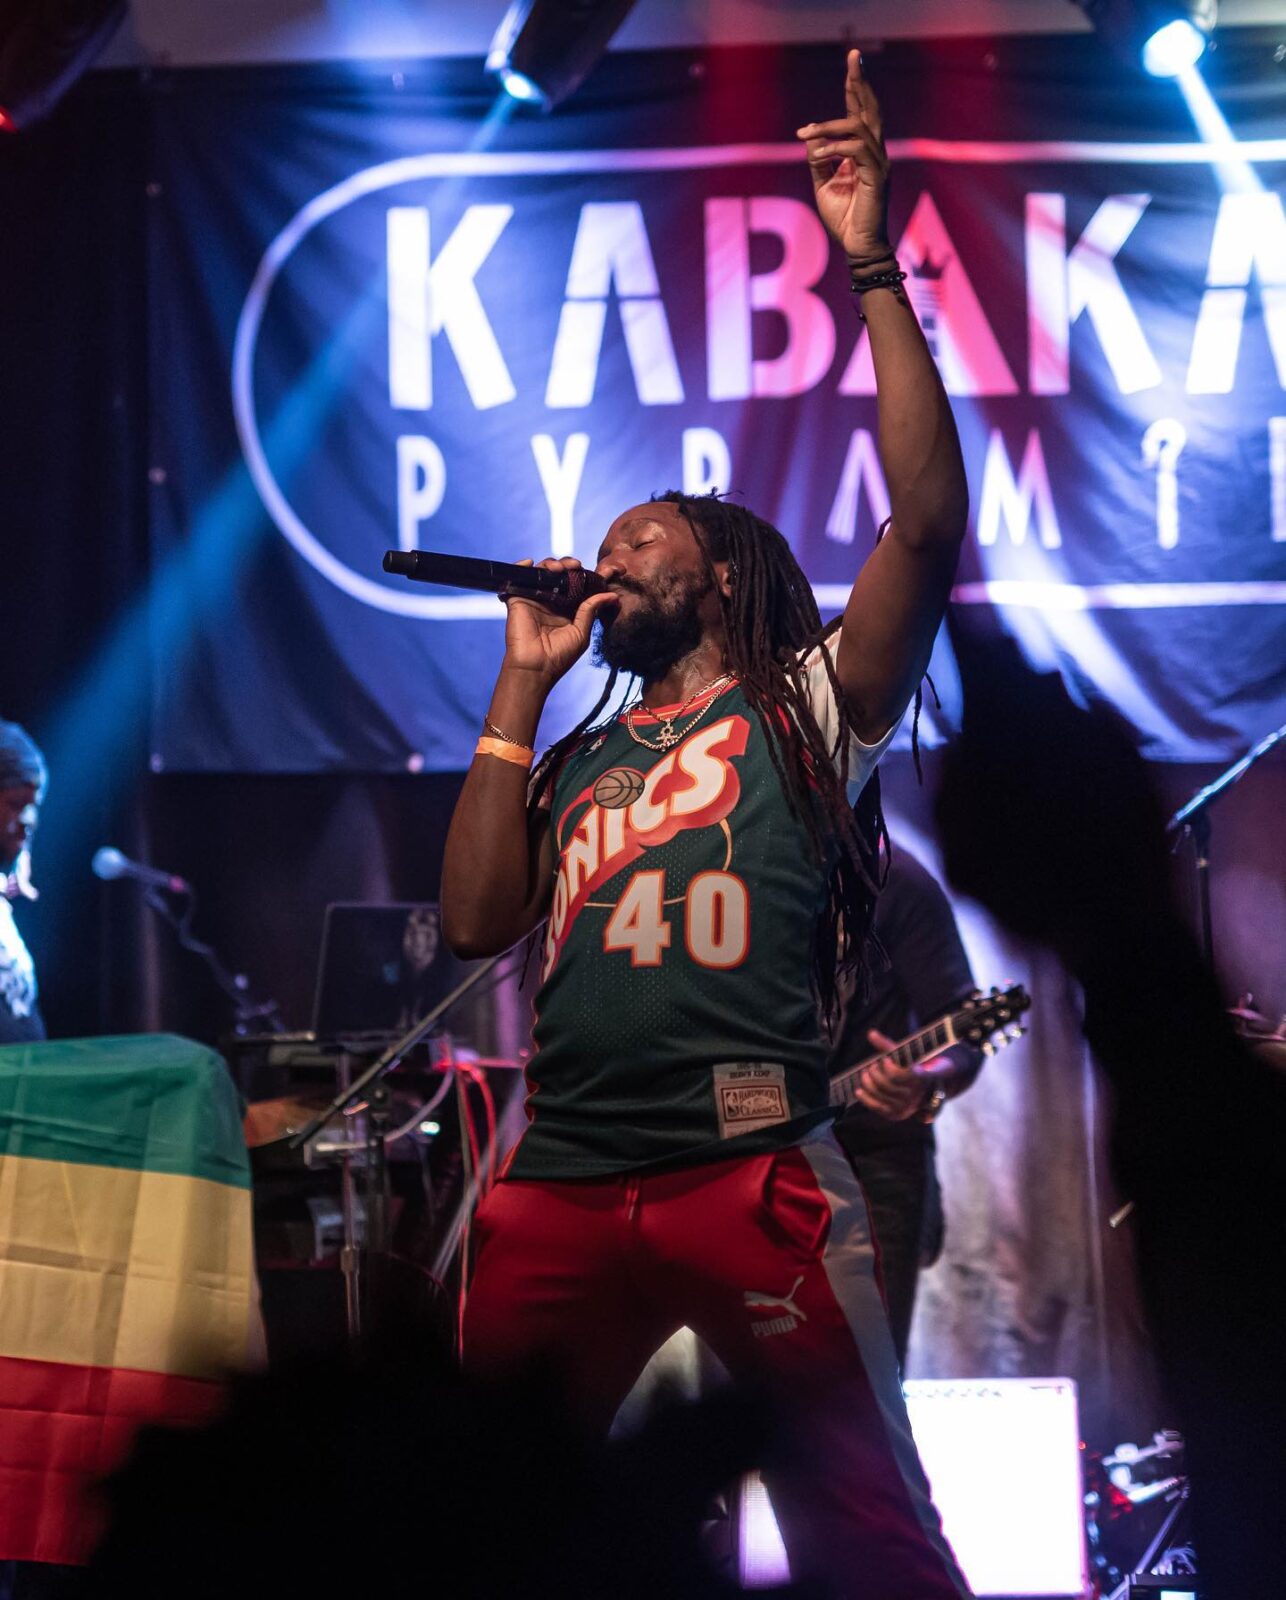 kabaka pyramid reggae tastemaker news 2